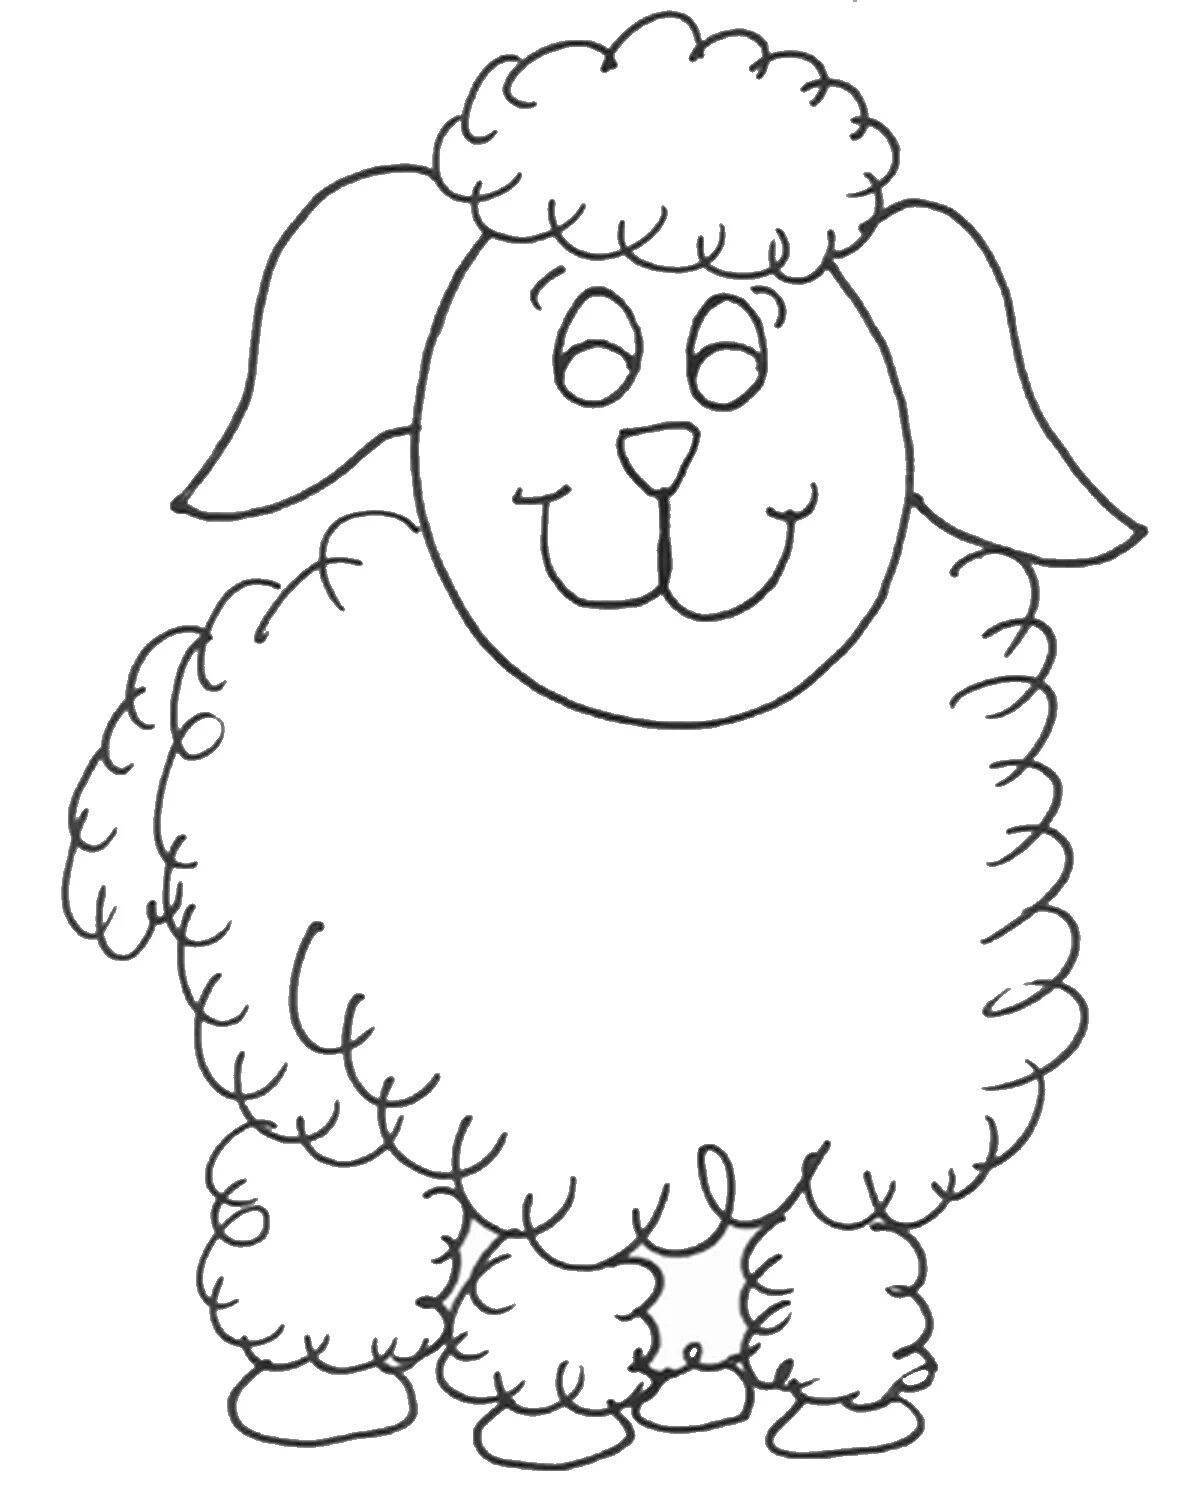 Увлекательная раскраска овец для детей 5-6 лет